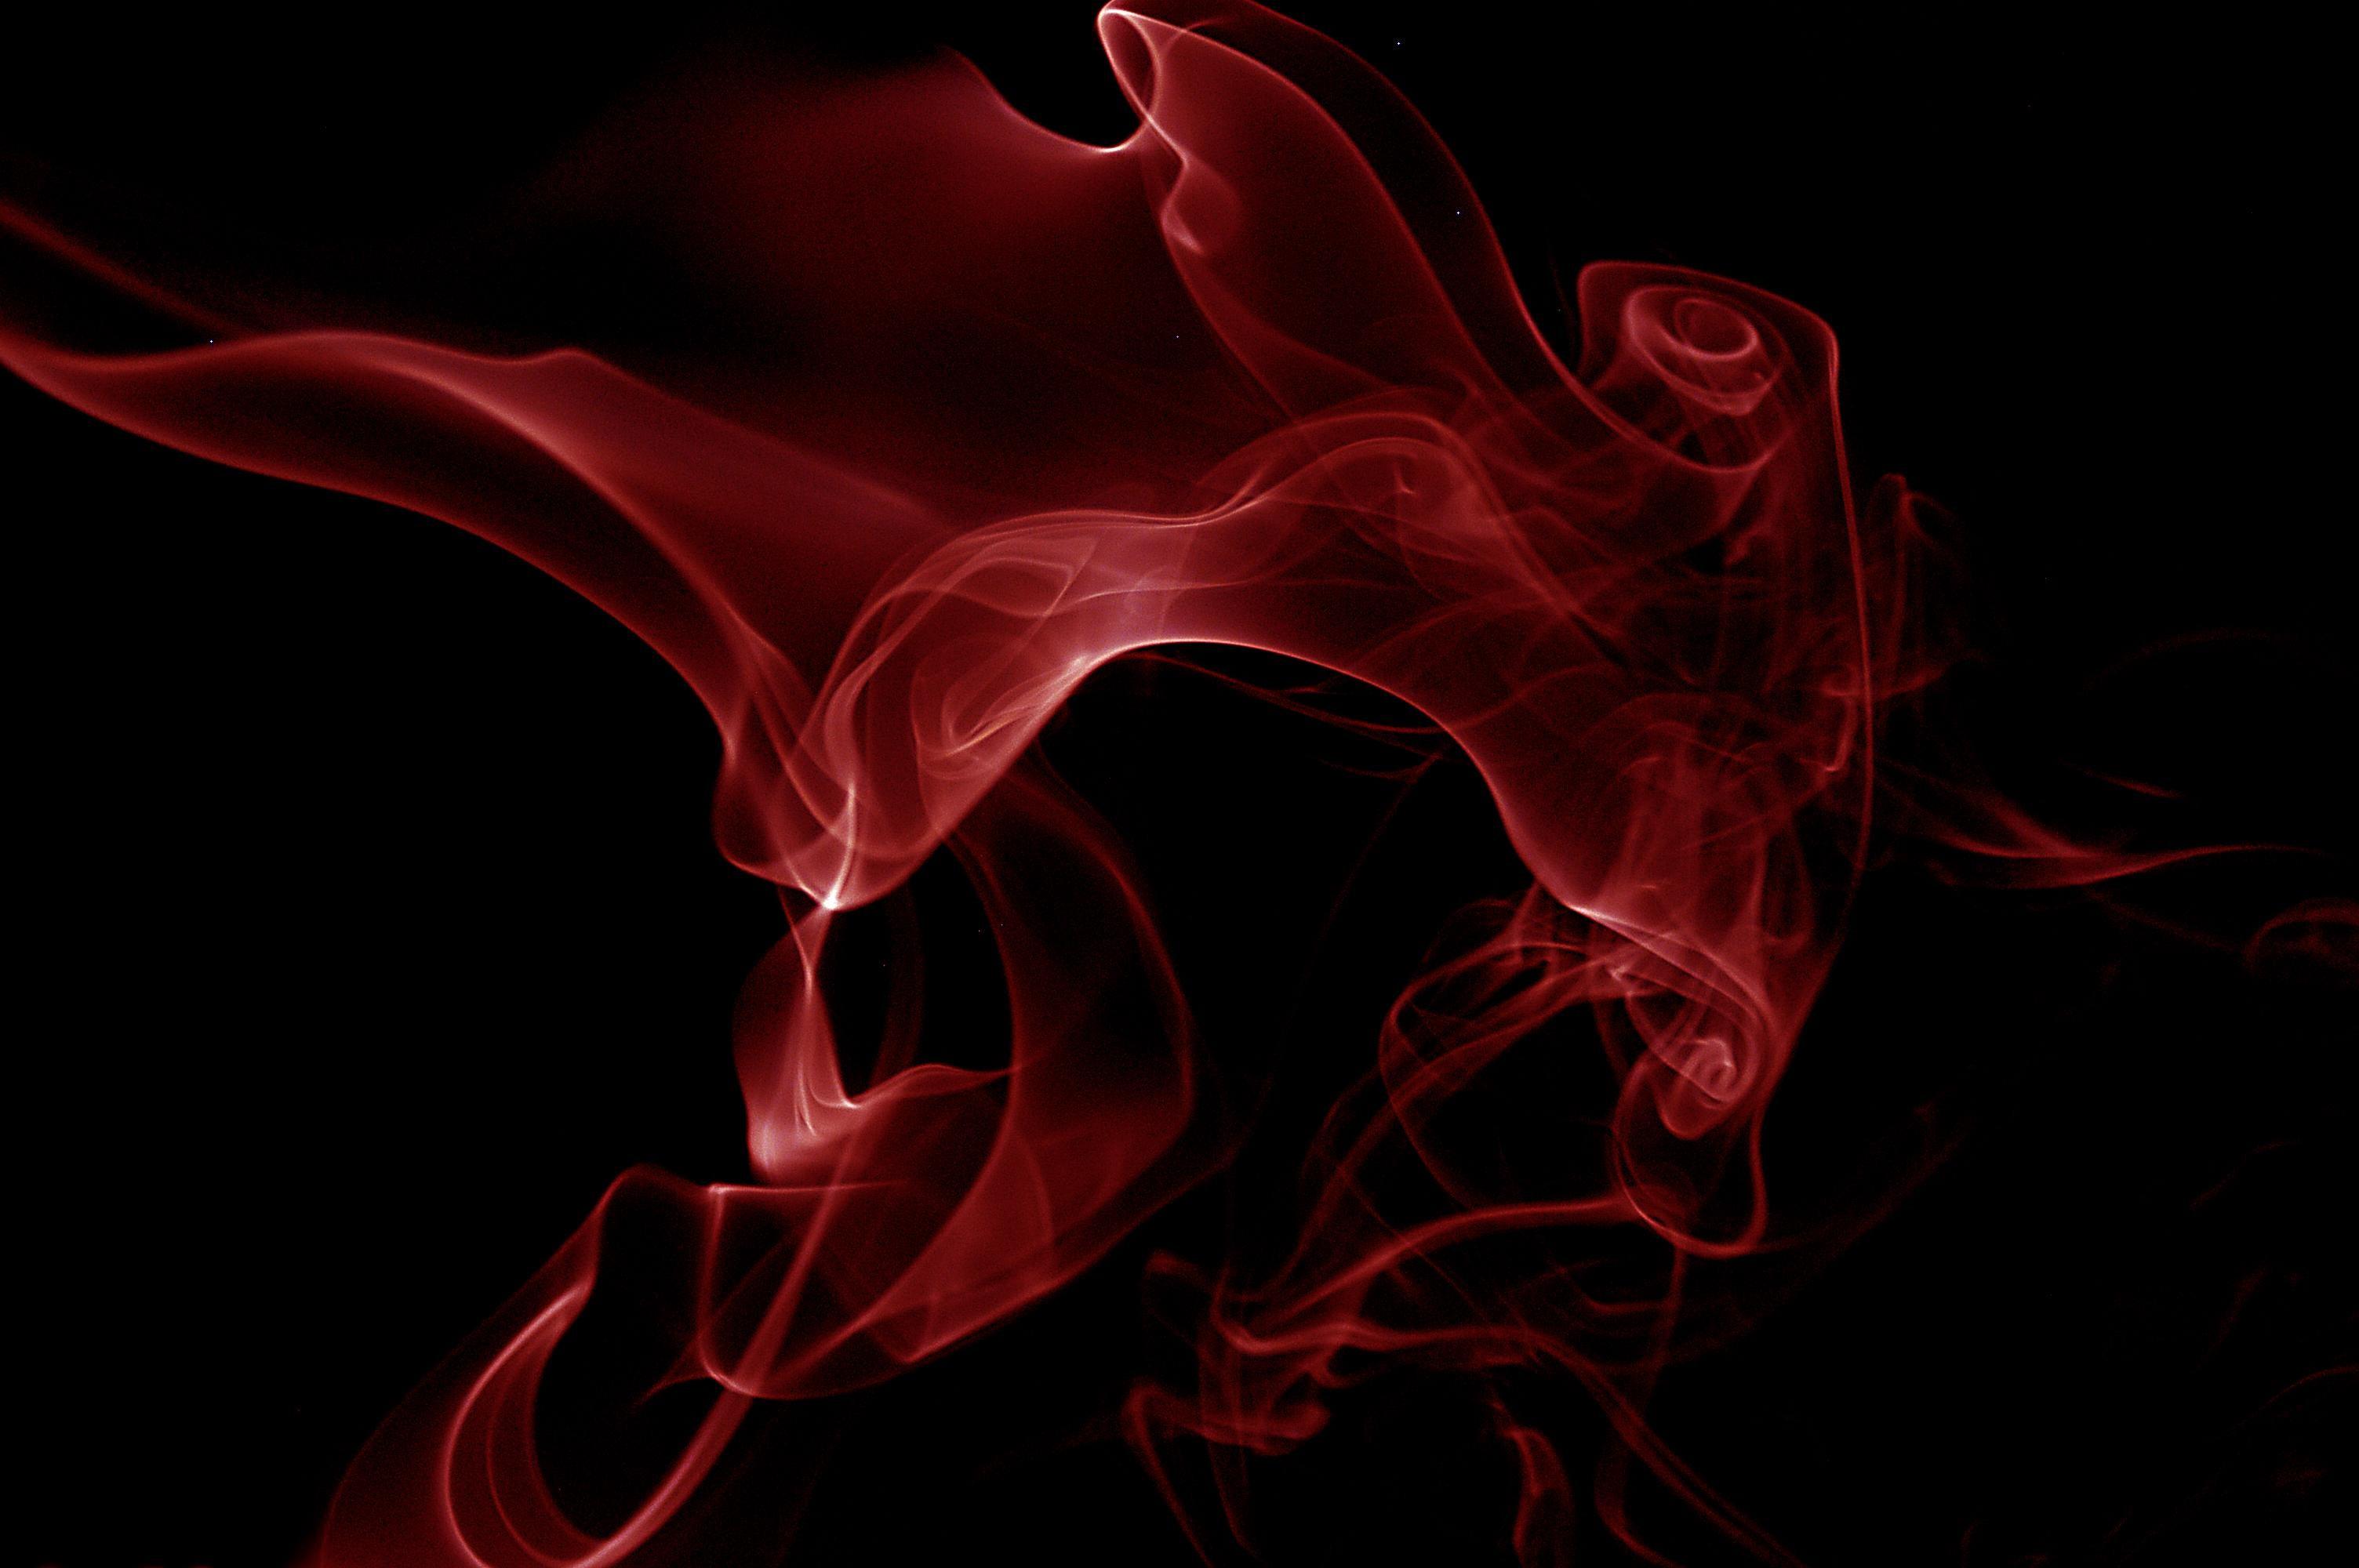 papel pintado negro y rojo,fumar,rojo,gráficos,cg artwork,diseño gráfico